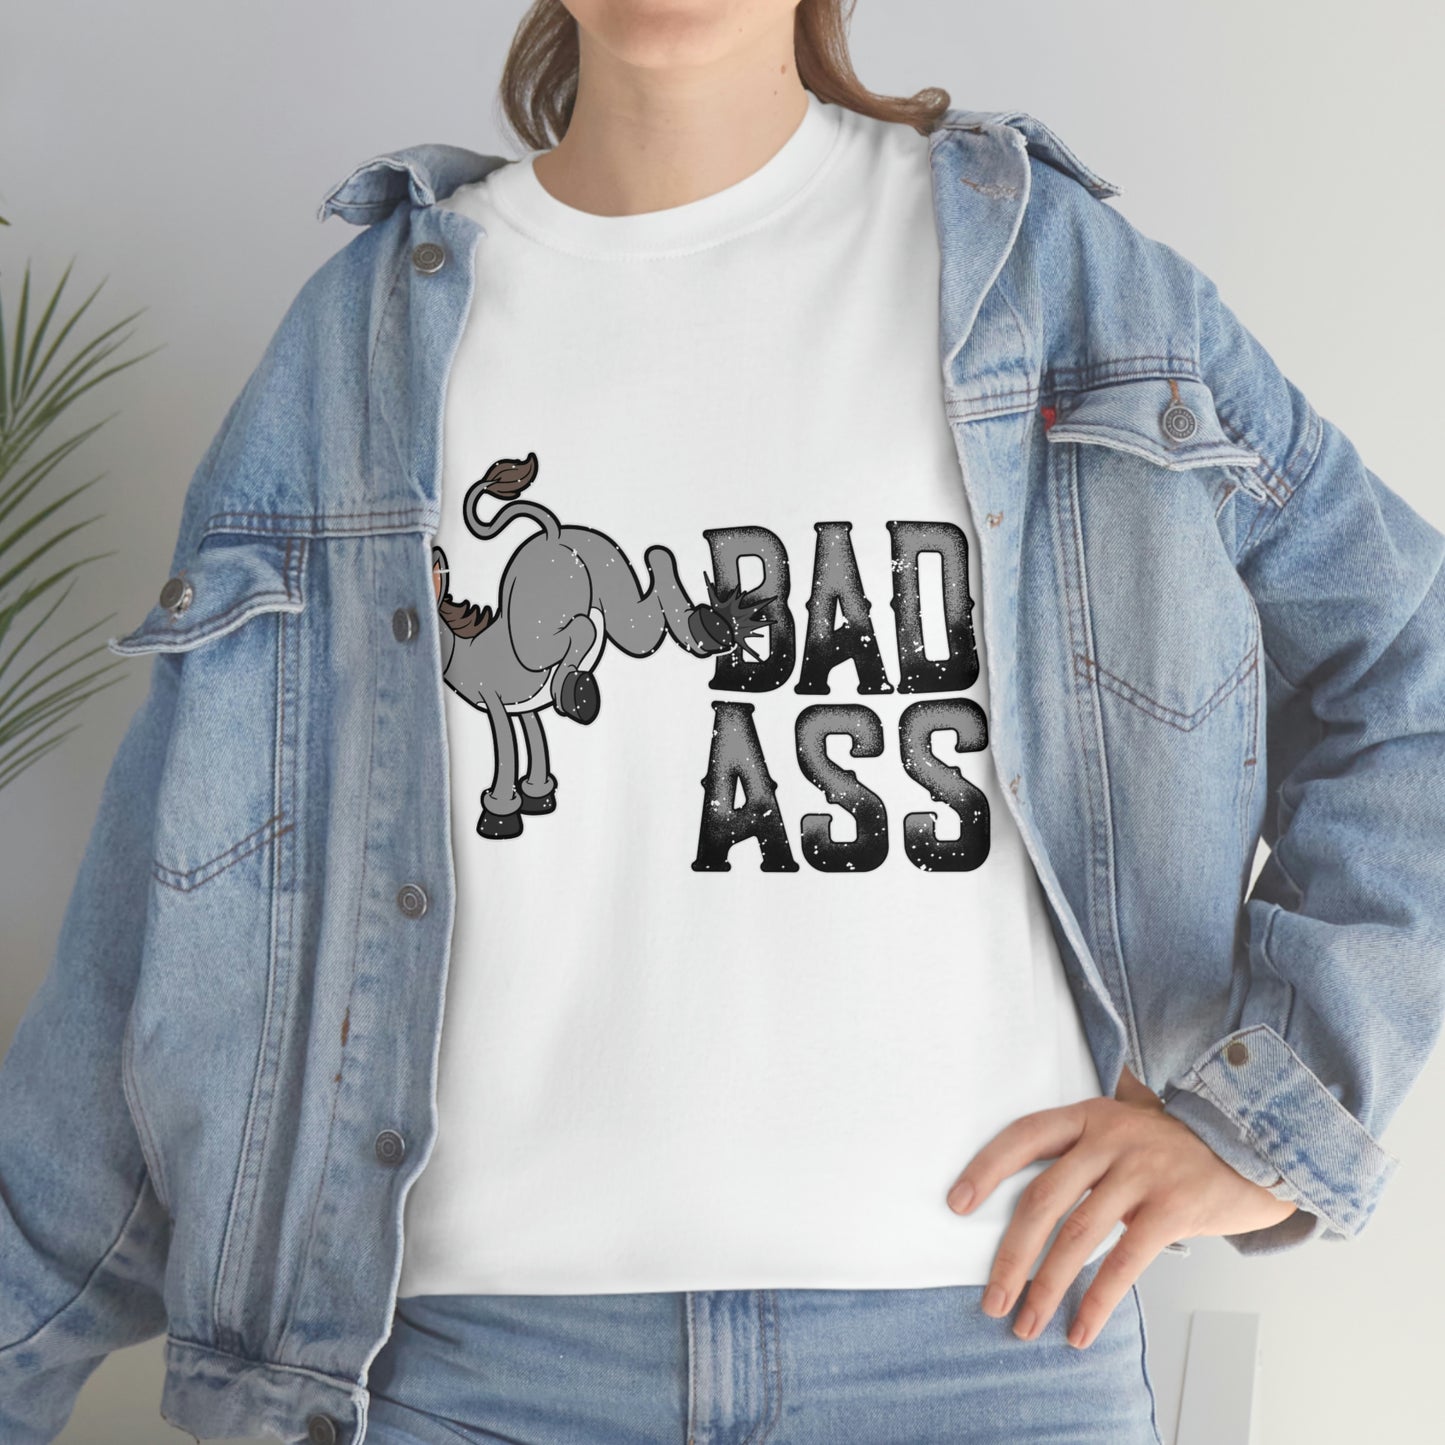 Bad Ass Cotton T-Shirt